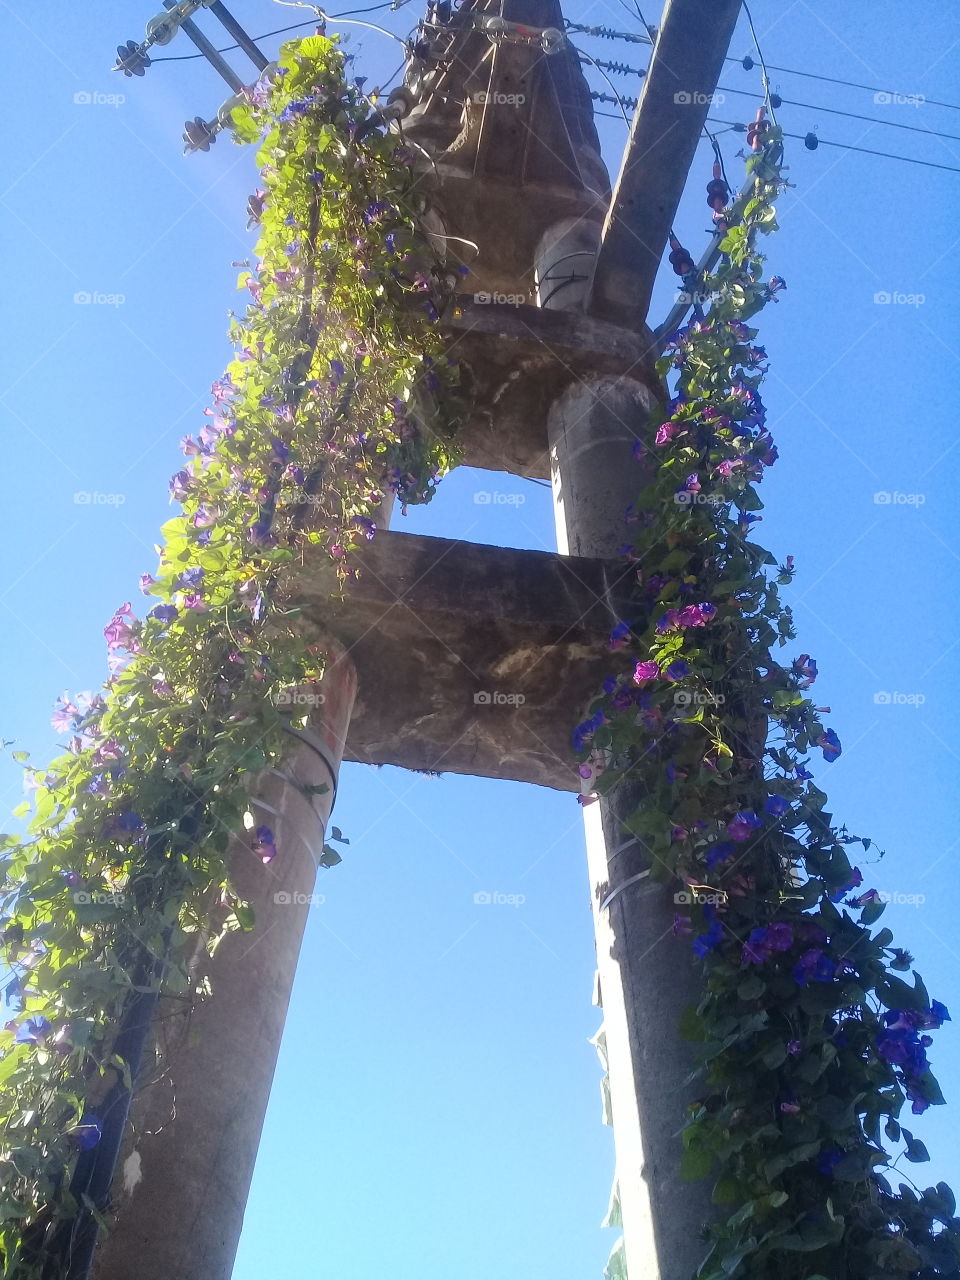 imagen de una enredadera florecida trepando por una torre de electricidad de alta tensión, cubriendola por completo.